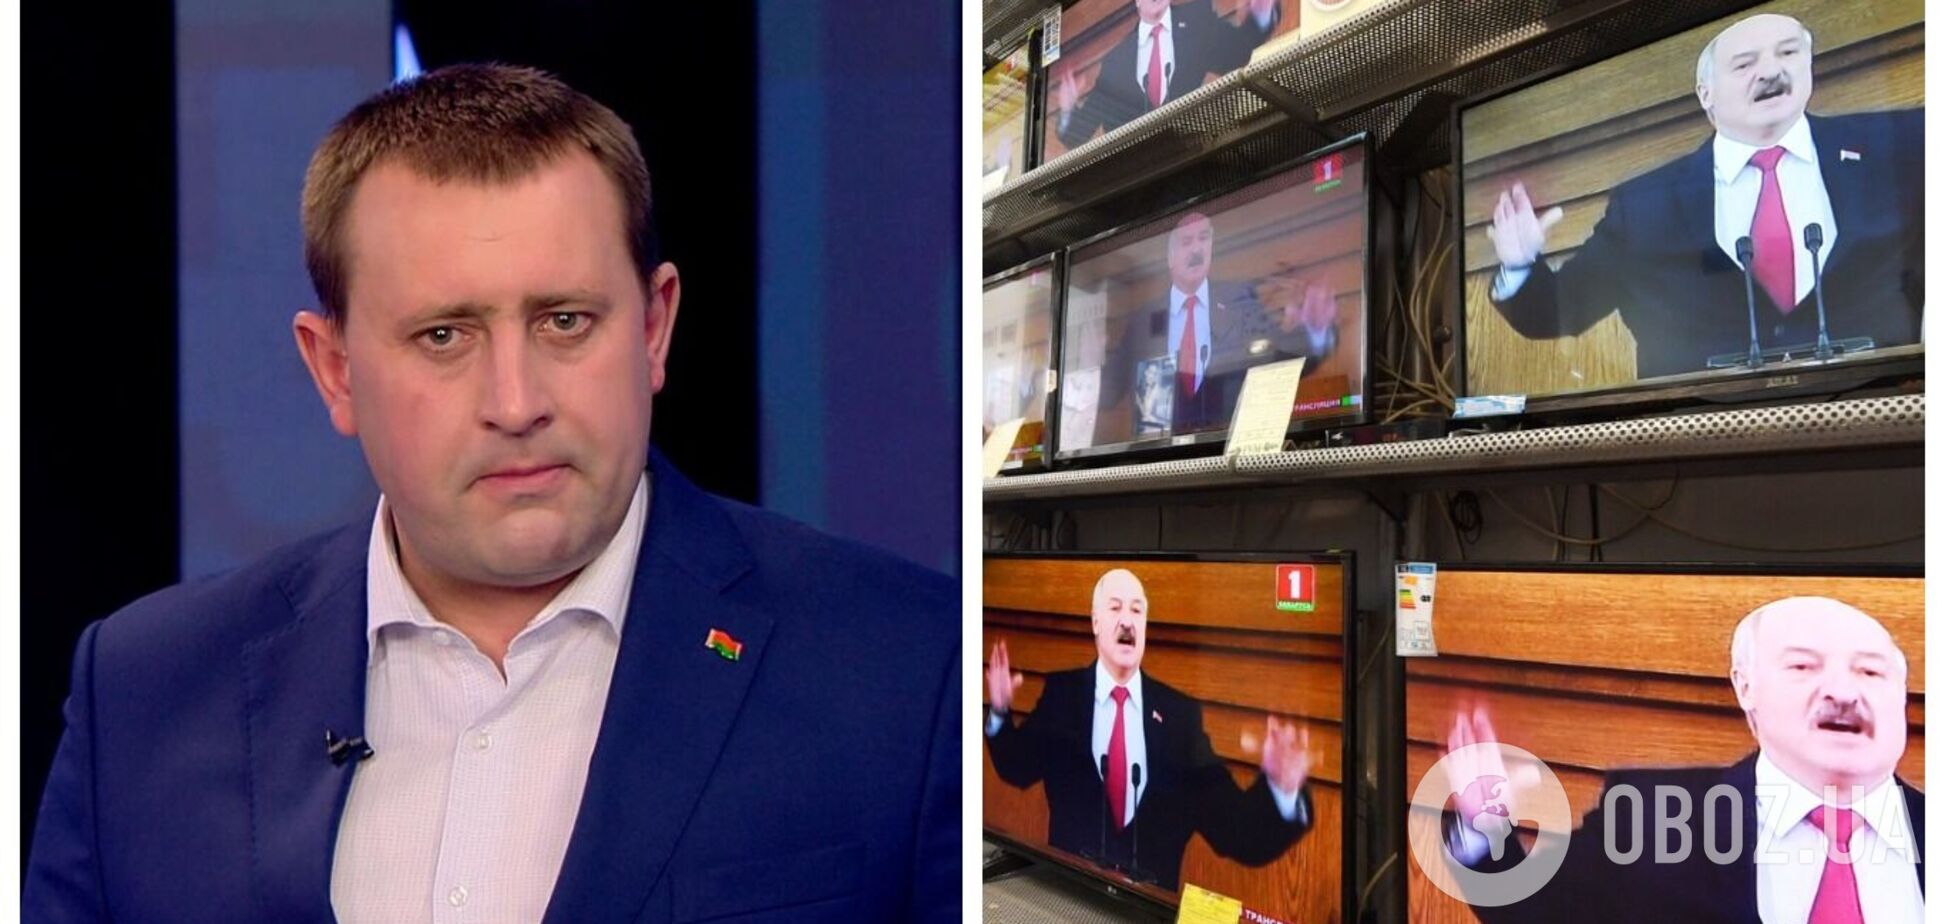 'Это технология': беларуский пропагандист заявил, что 'украинцы реально едят россиян'. Видео